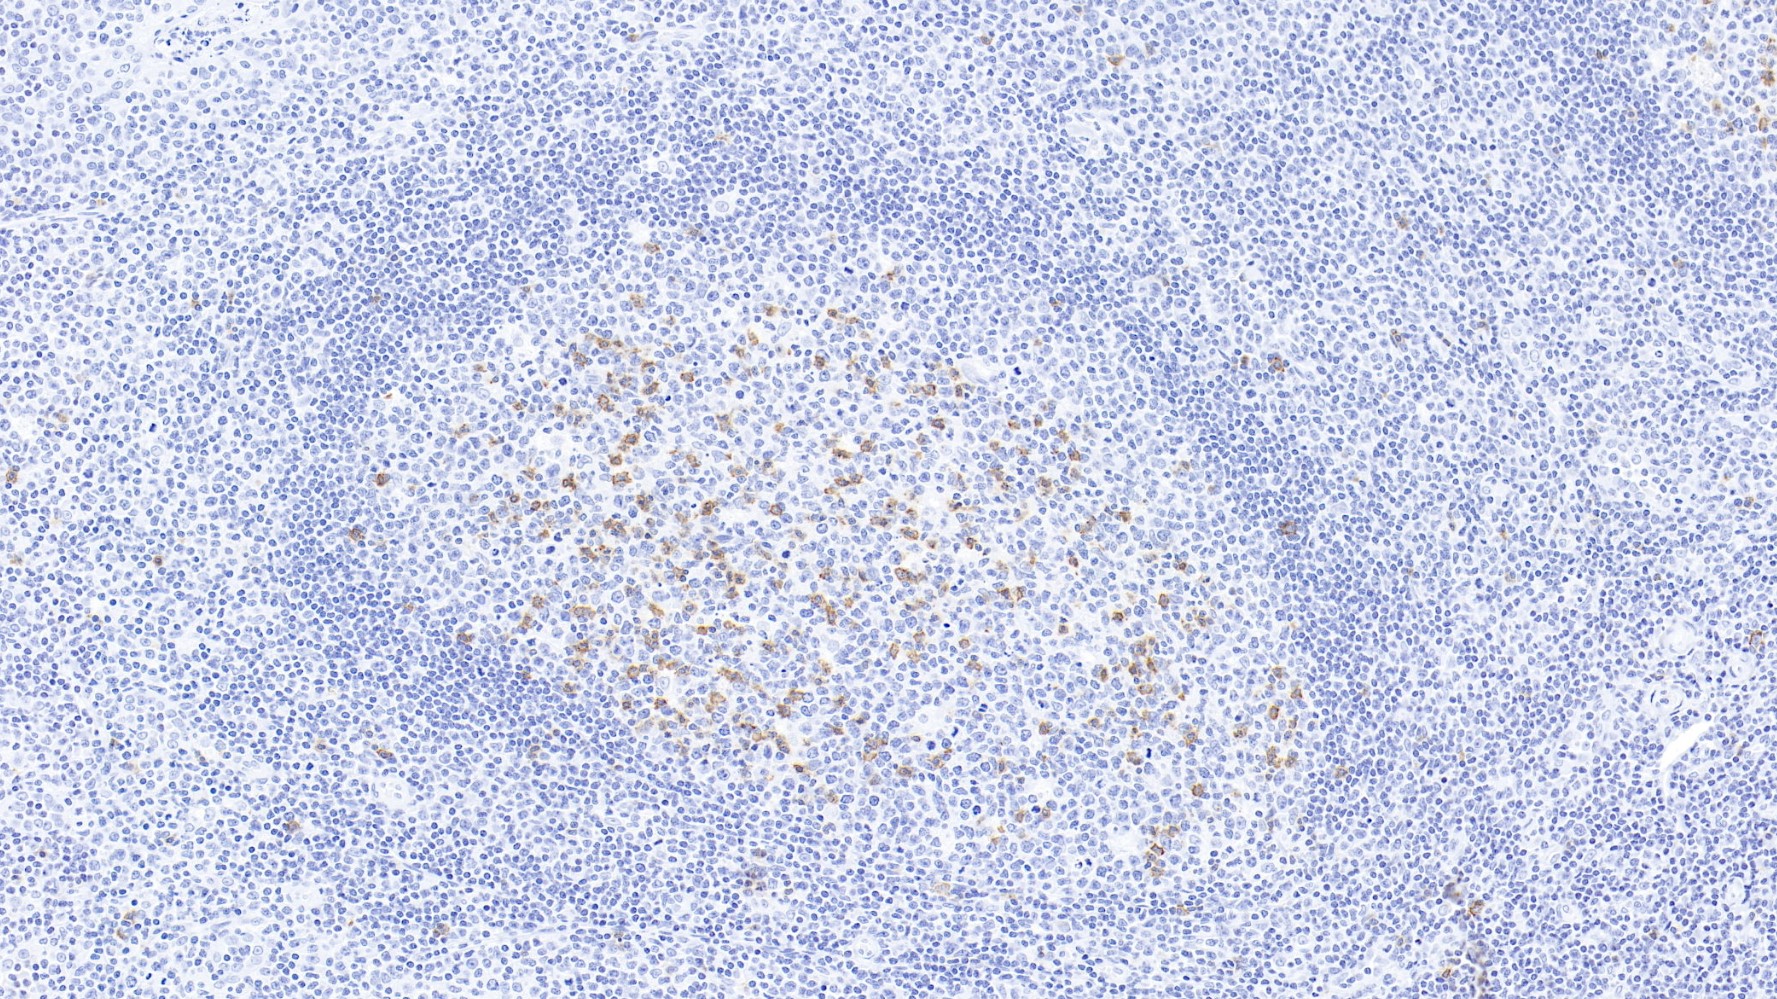 扁桃体CD57(MyM1-CD57)染色